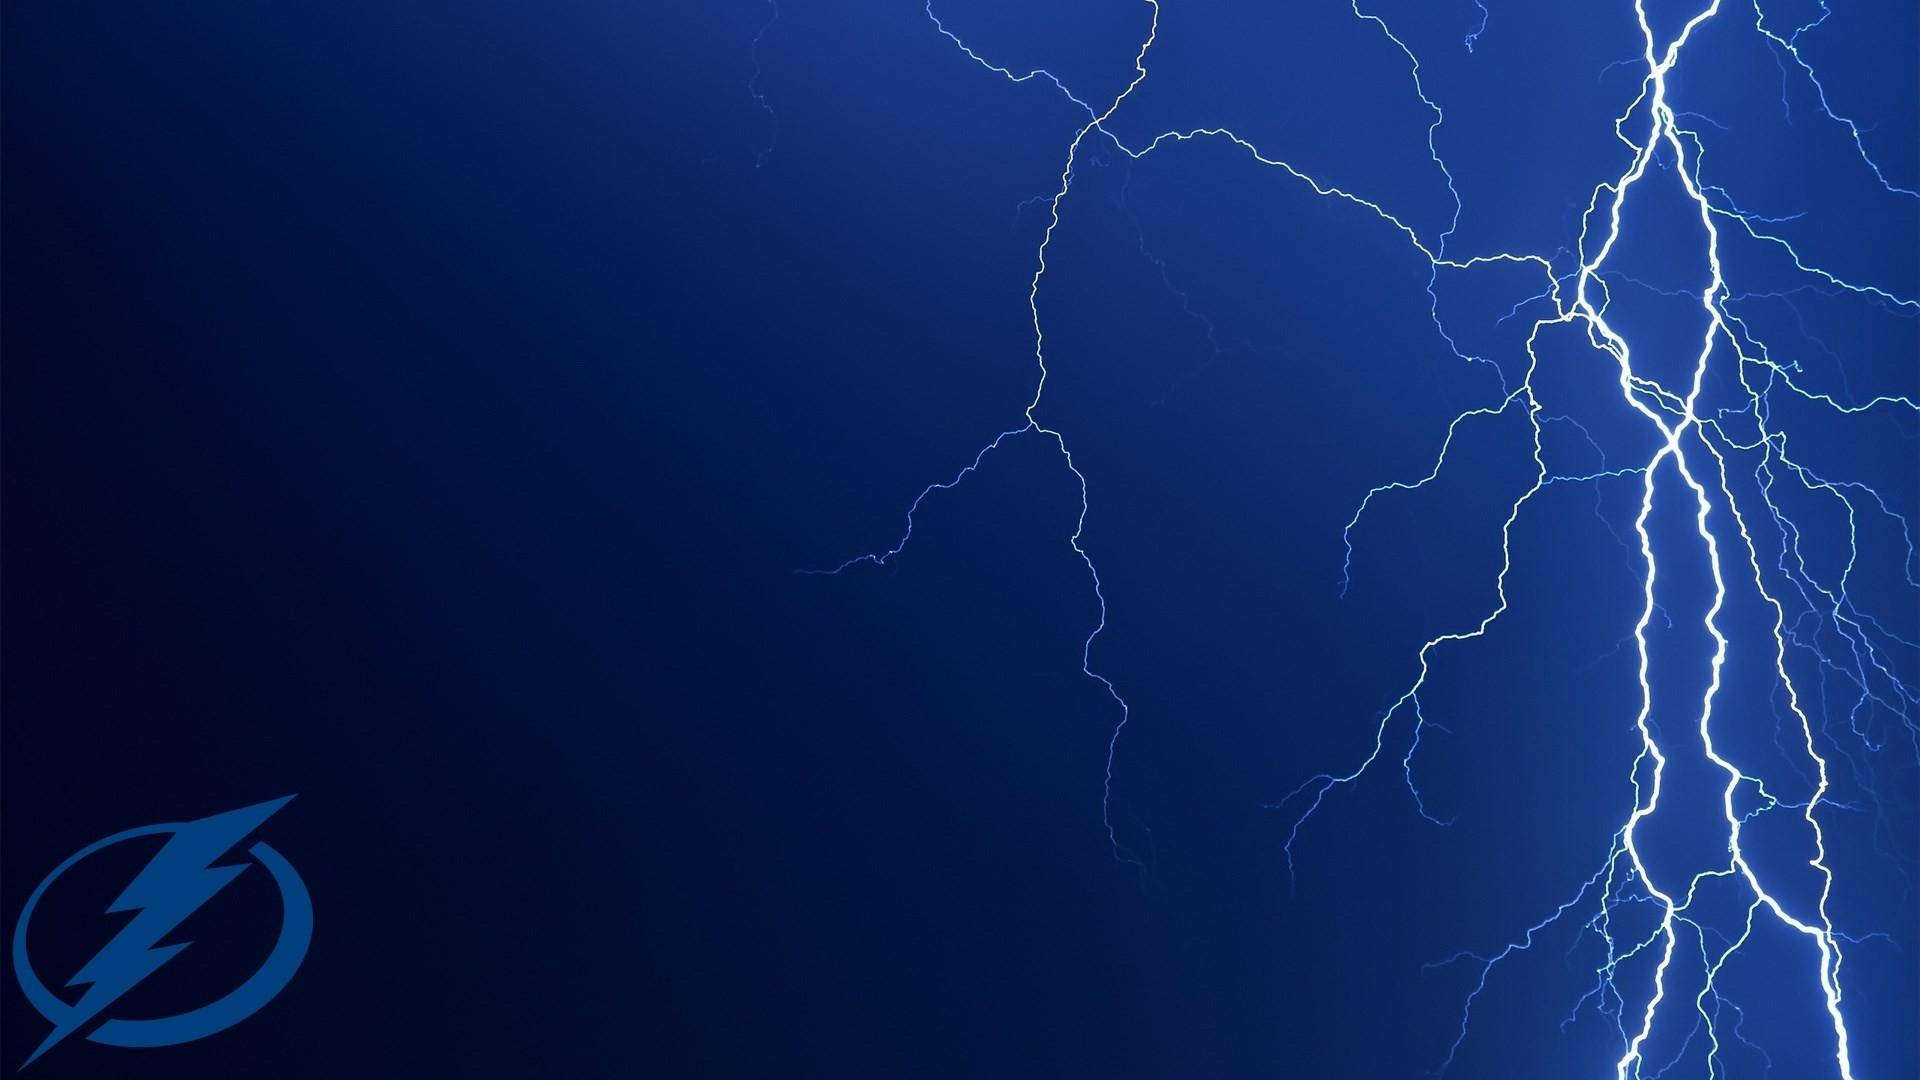 Tampa Bay Lightning Striking Blue